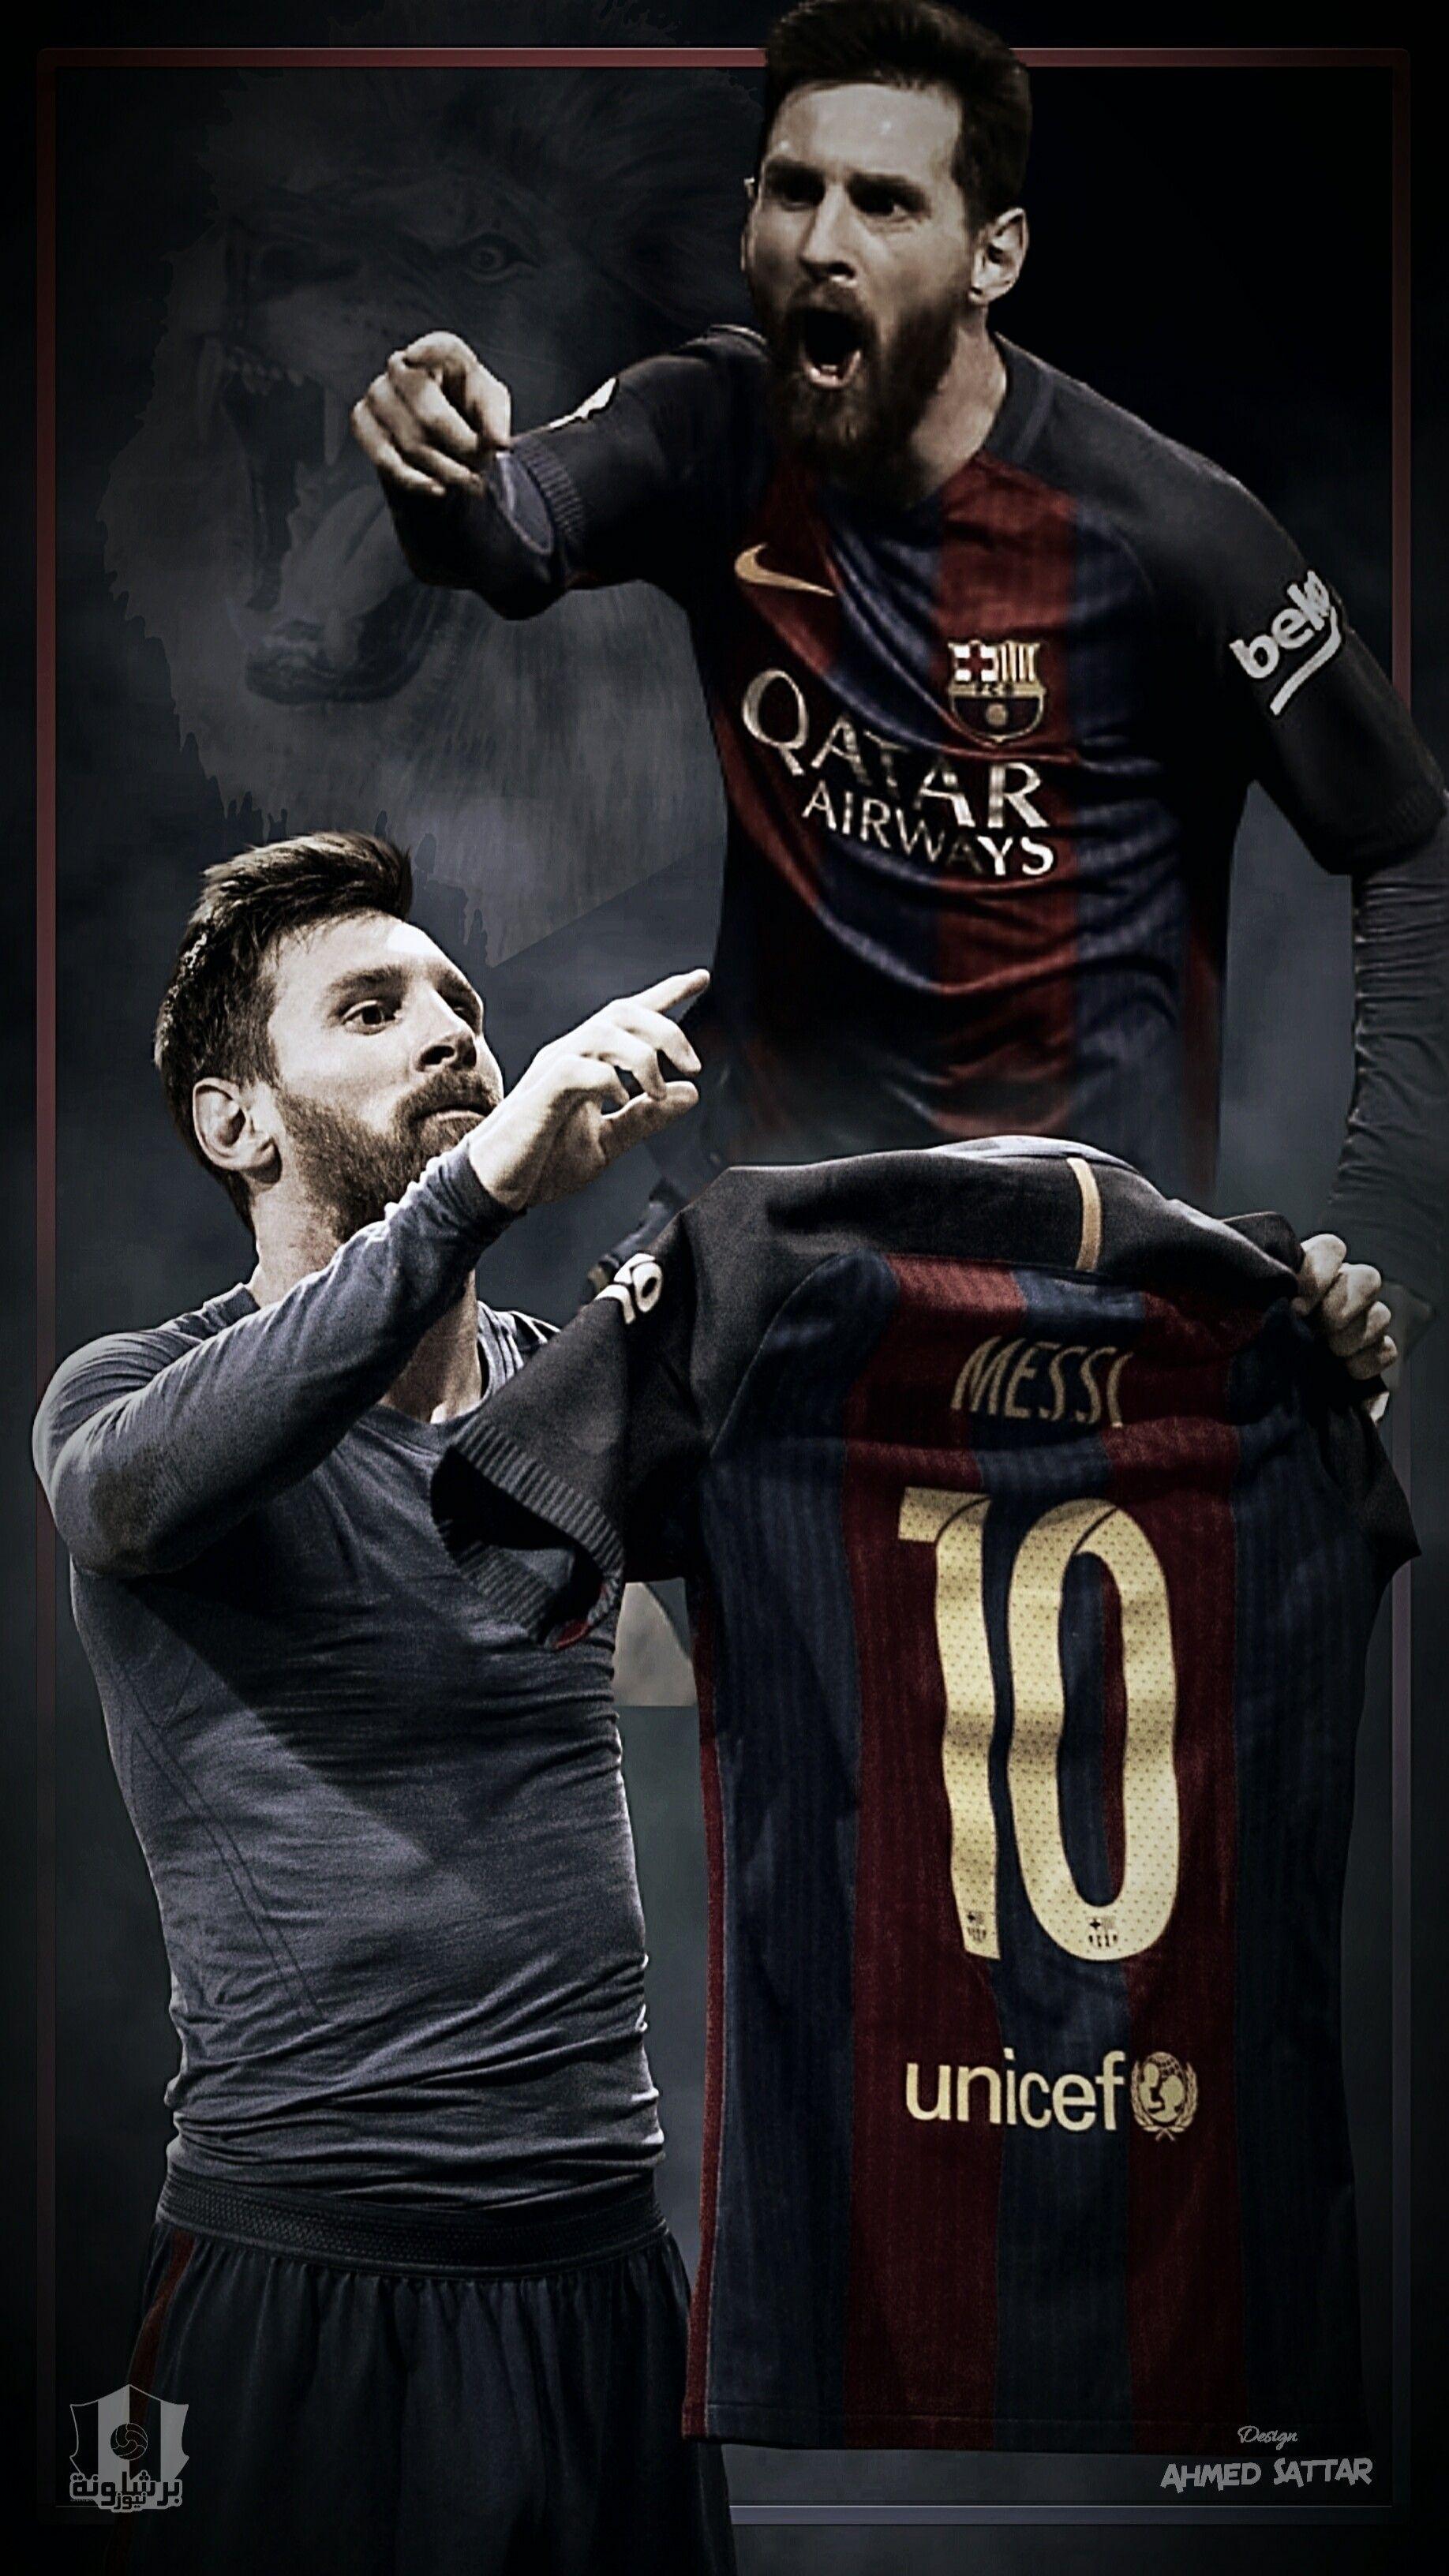 Siêu sao Messi là cầu thủ thiên tài với kỹ thuật điêu luyện và khả năng xử lý bóng tuyệt vời. Để được chứng kiến tài năng vô địch của anh, hãy xem hình ảnh liên quan đến Messi ngay.